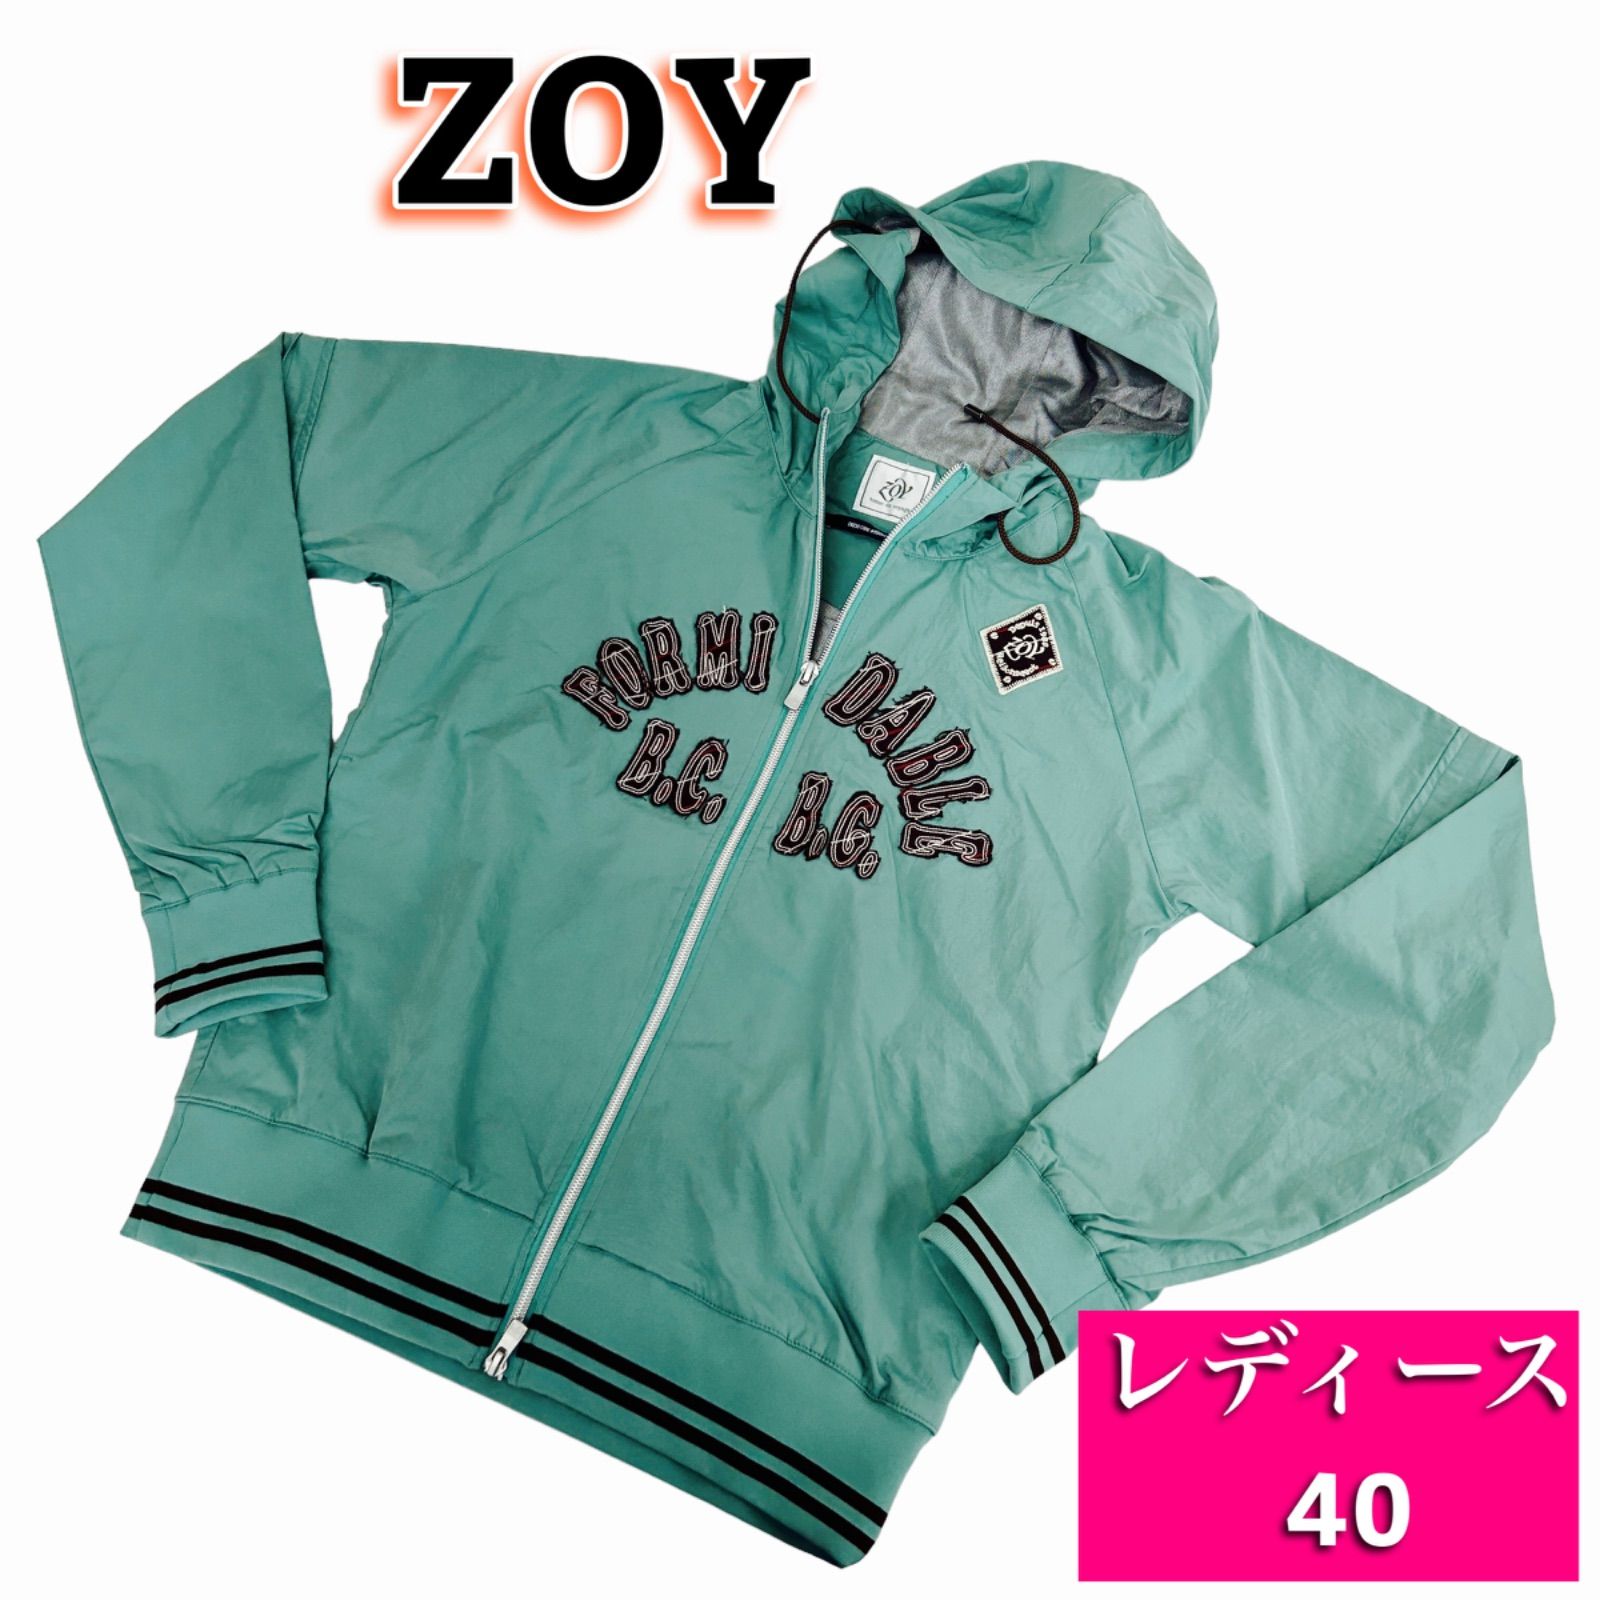 ZOY ゴルフウェア 40サイズ - ウエア(女性用)